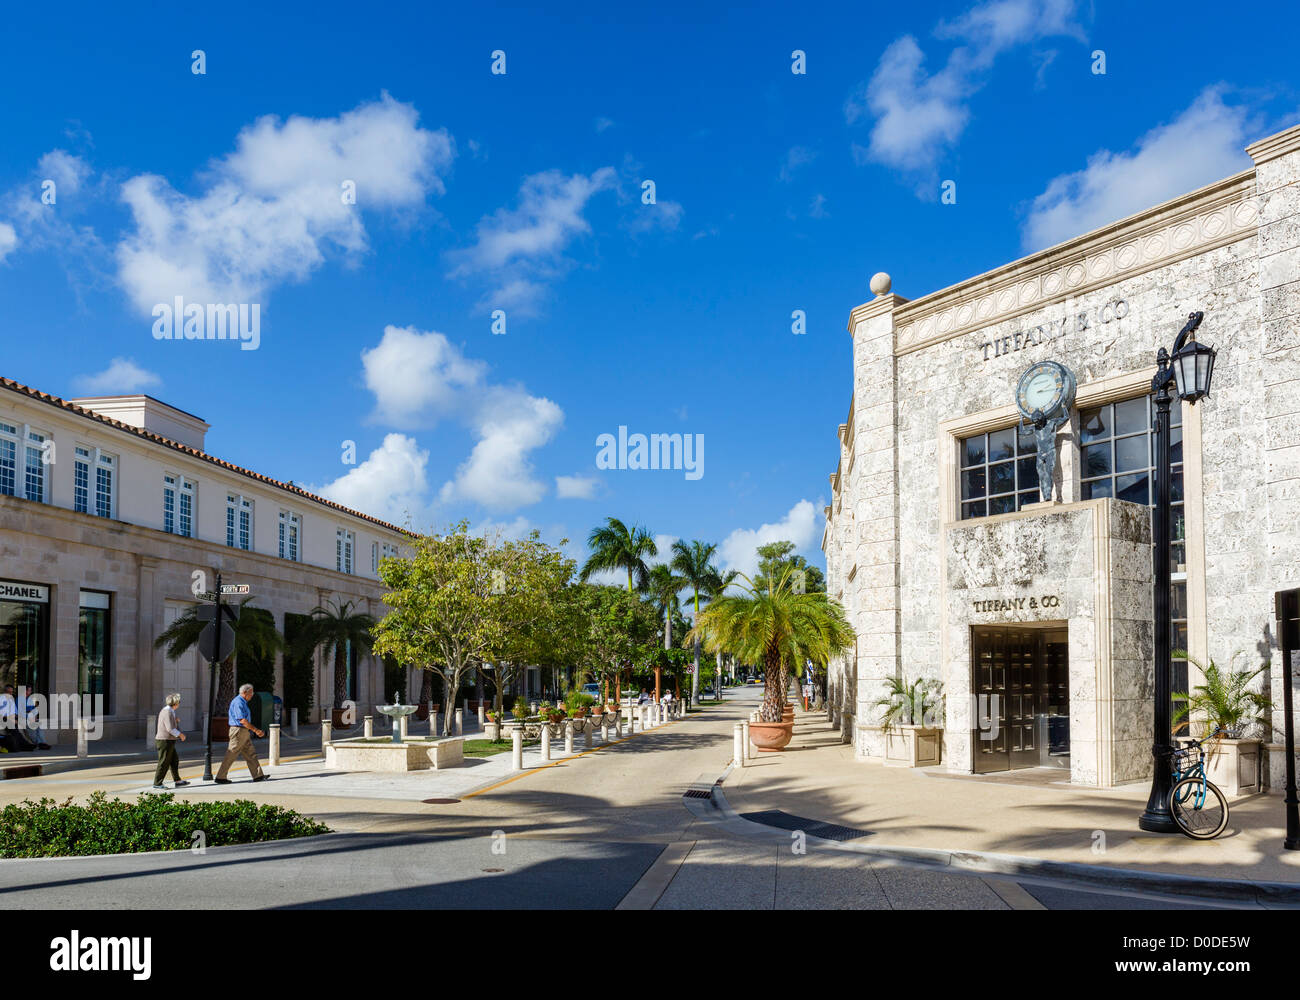 La intersección de la Avenida Hibiscus y Worth Avenue con Tiffany & Co a la derecha, Palm Beach, Florida, EE.UU. Foto de stock